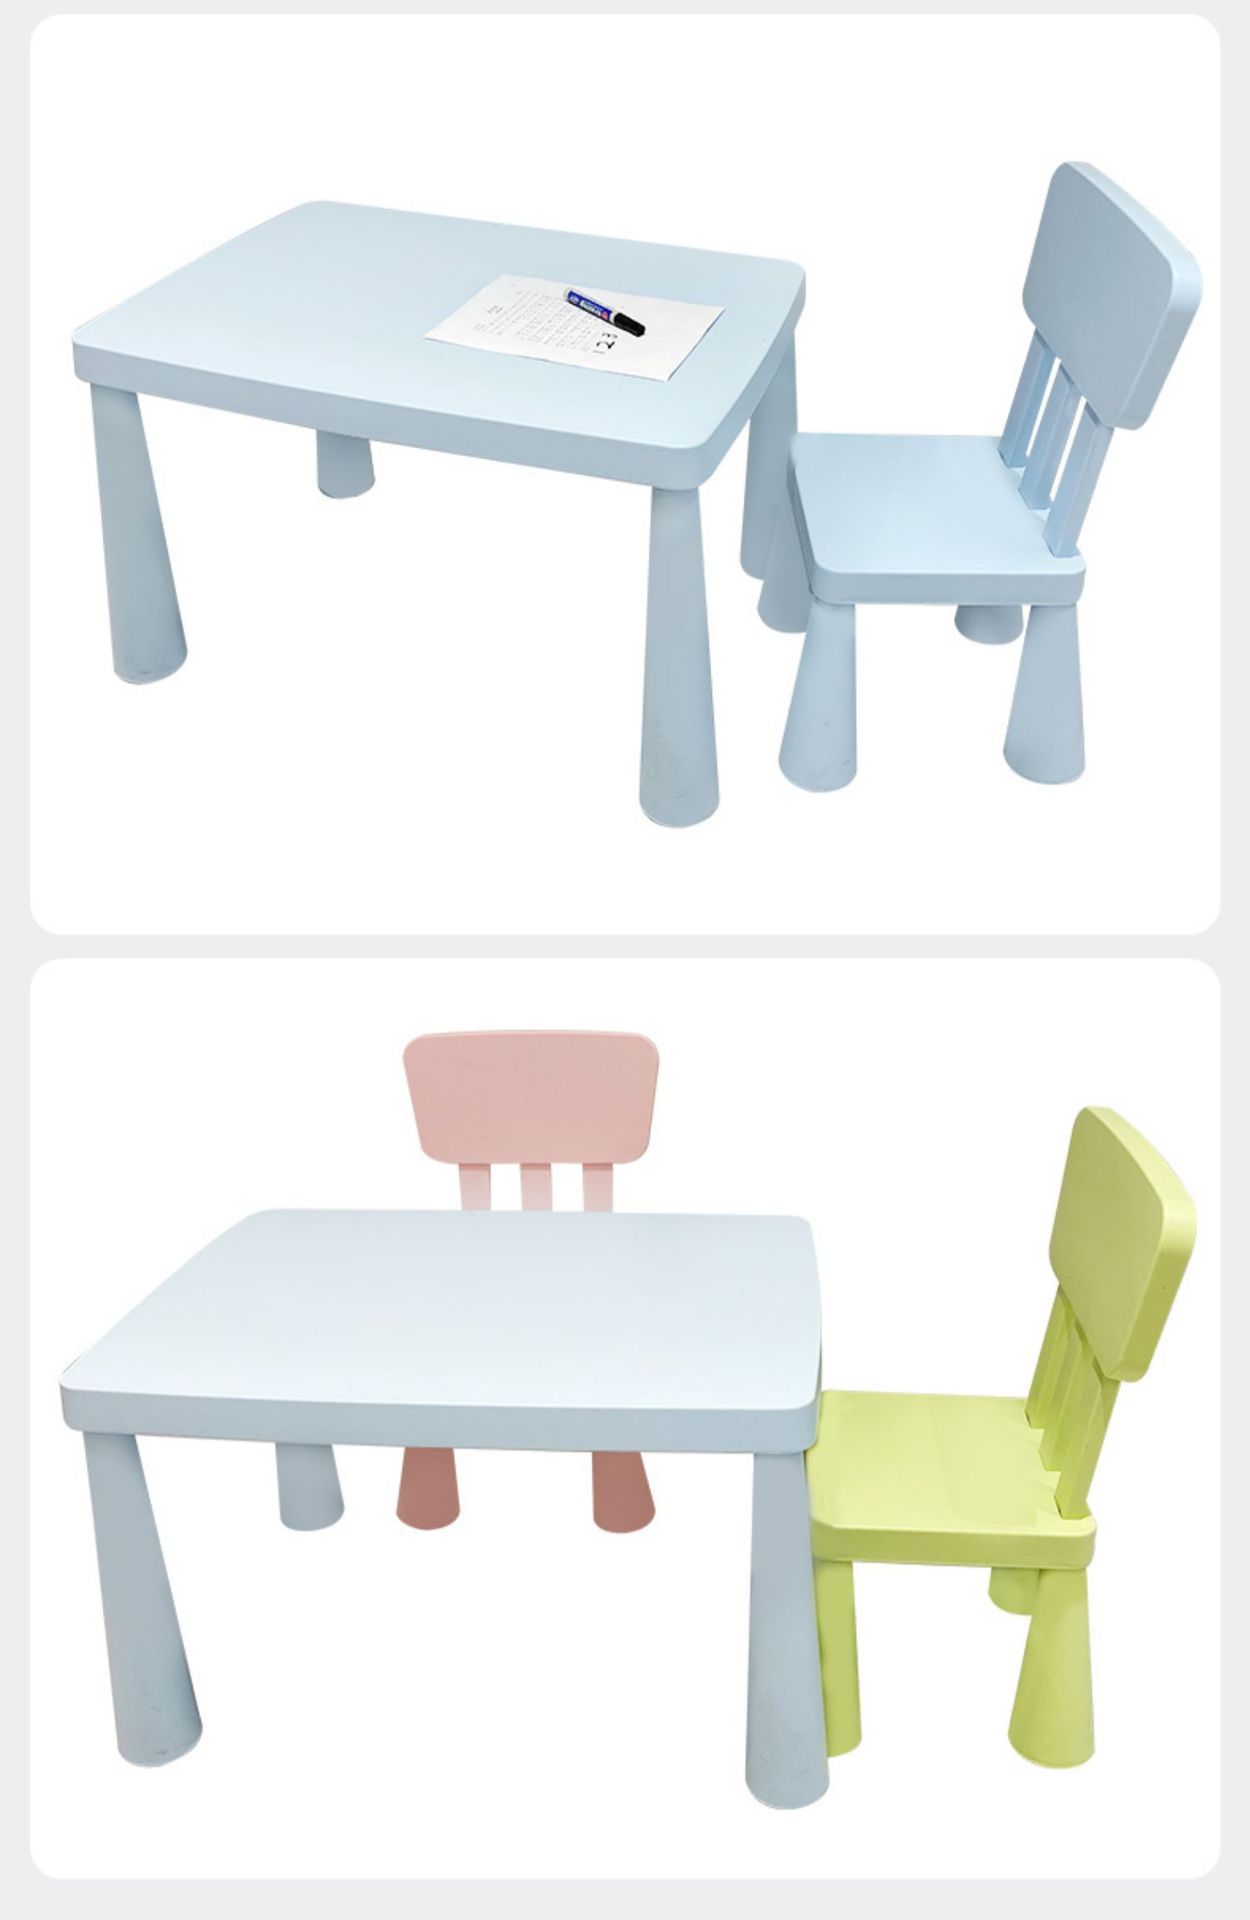 เซ็ทโต๊ะและเก้าอี้เด็ก โต๊ะเด็ก  IKEA เฉพาะโต๊ะ พร้อมส่ง ถูกลงกว่าเดิม จำนวนจำกัด